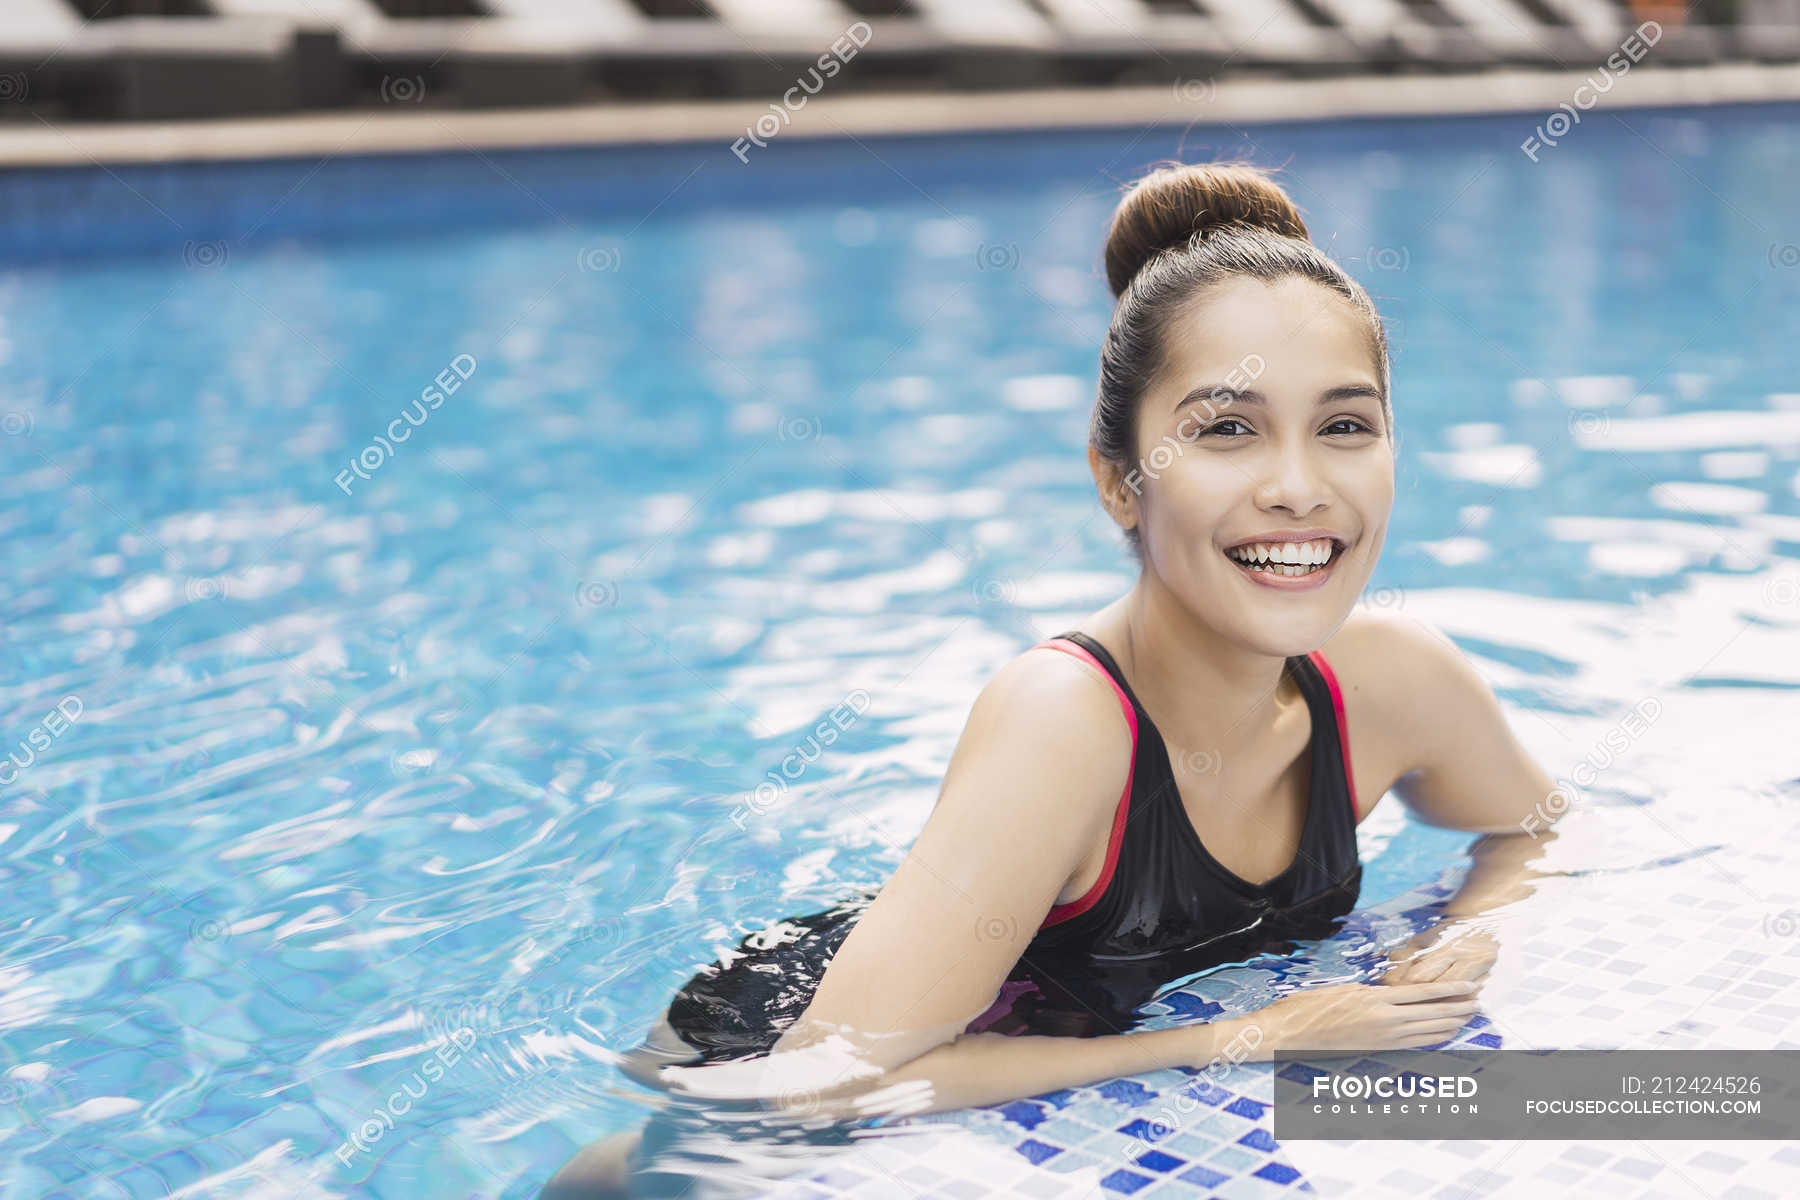 Young Beautiful Asian Woman In Swimming Suit Having Fun In Pool